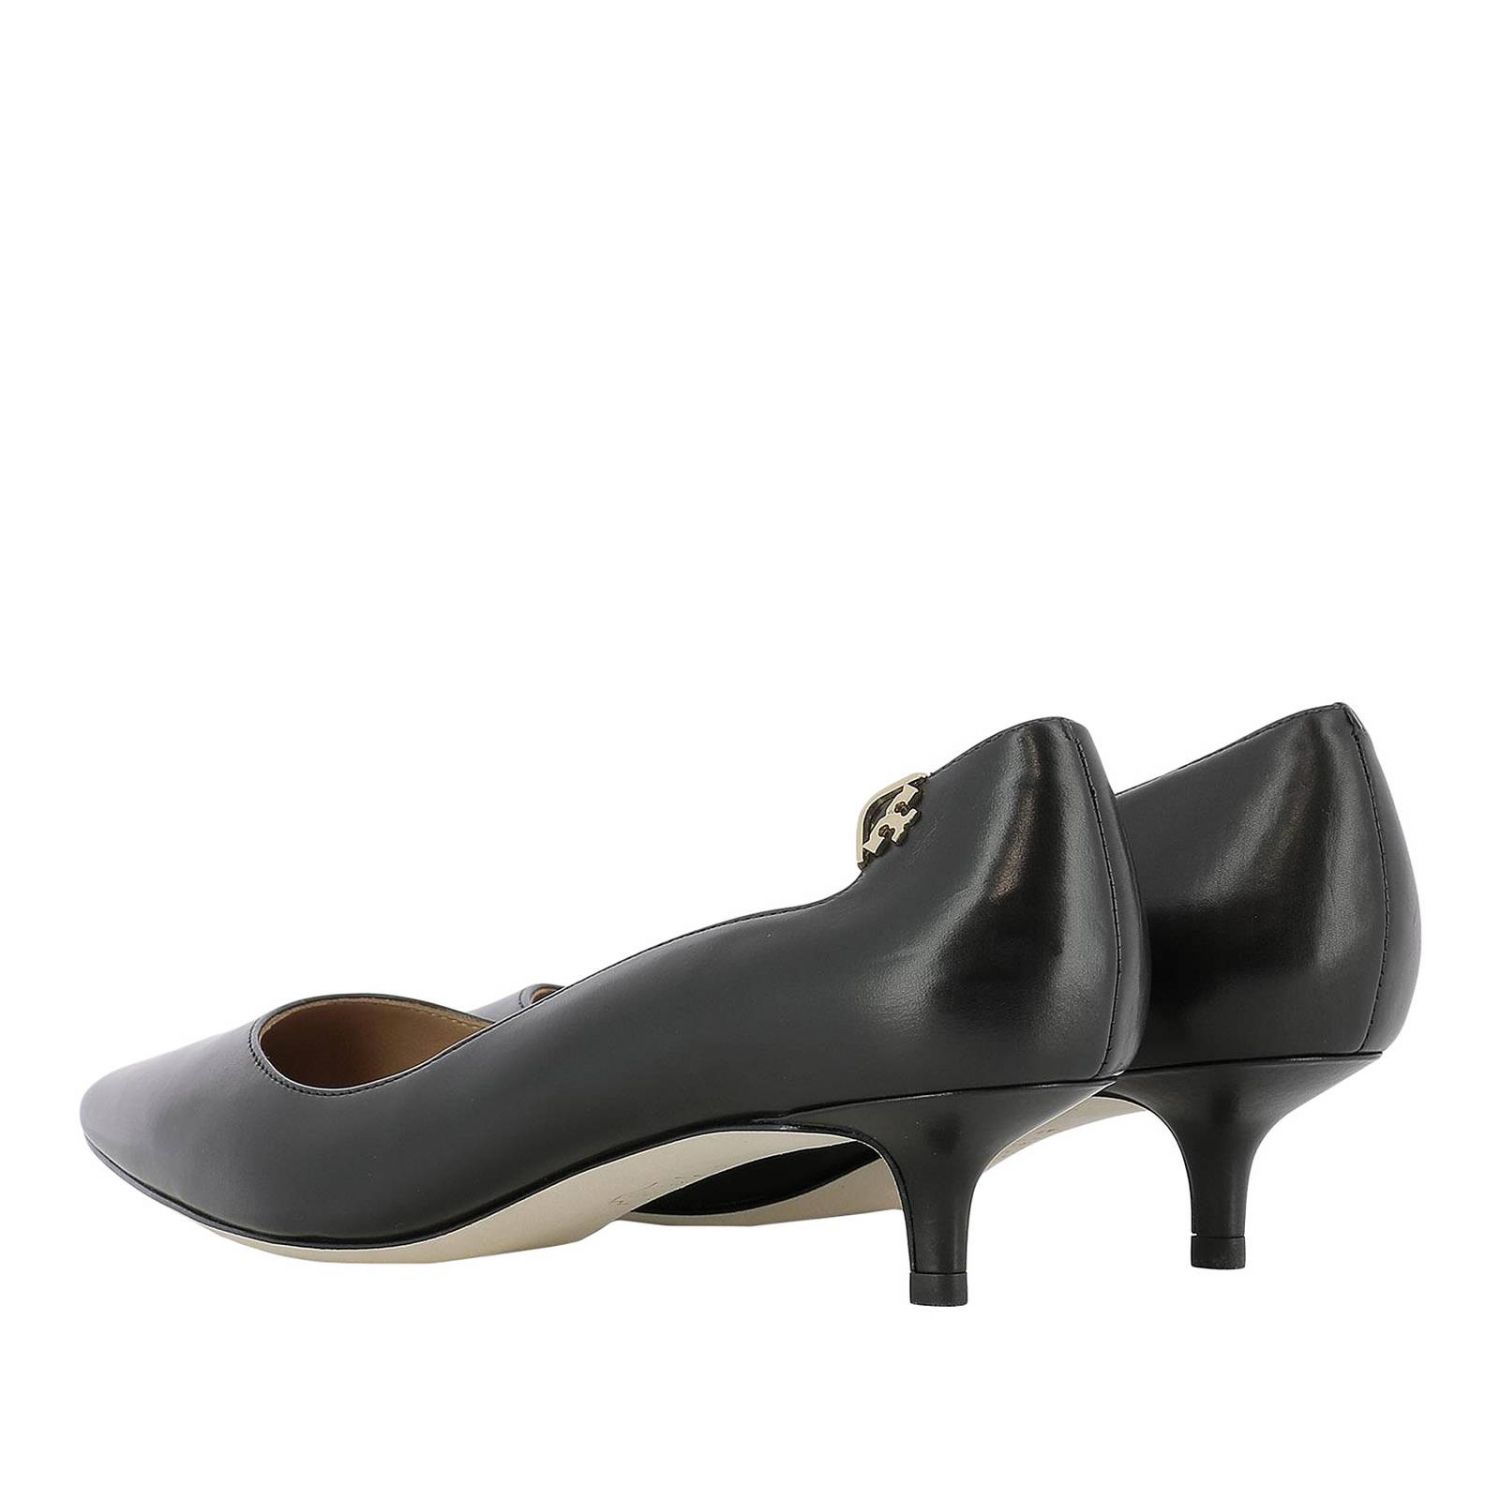 TORY BURCH: High heel shoes women | High Heel Shoes Tory Burch Women ...